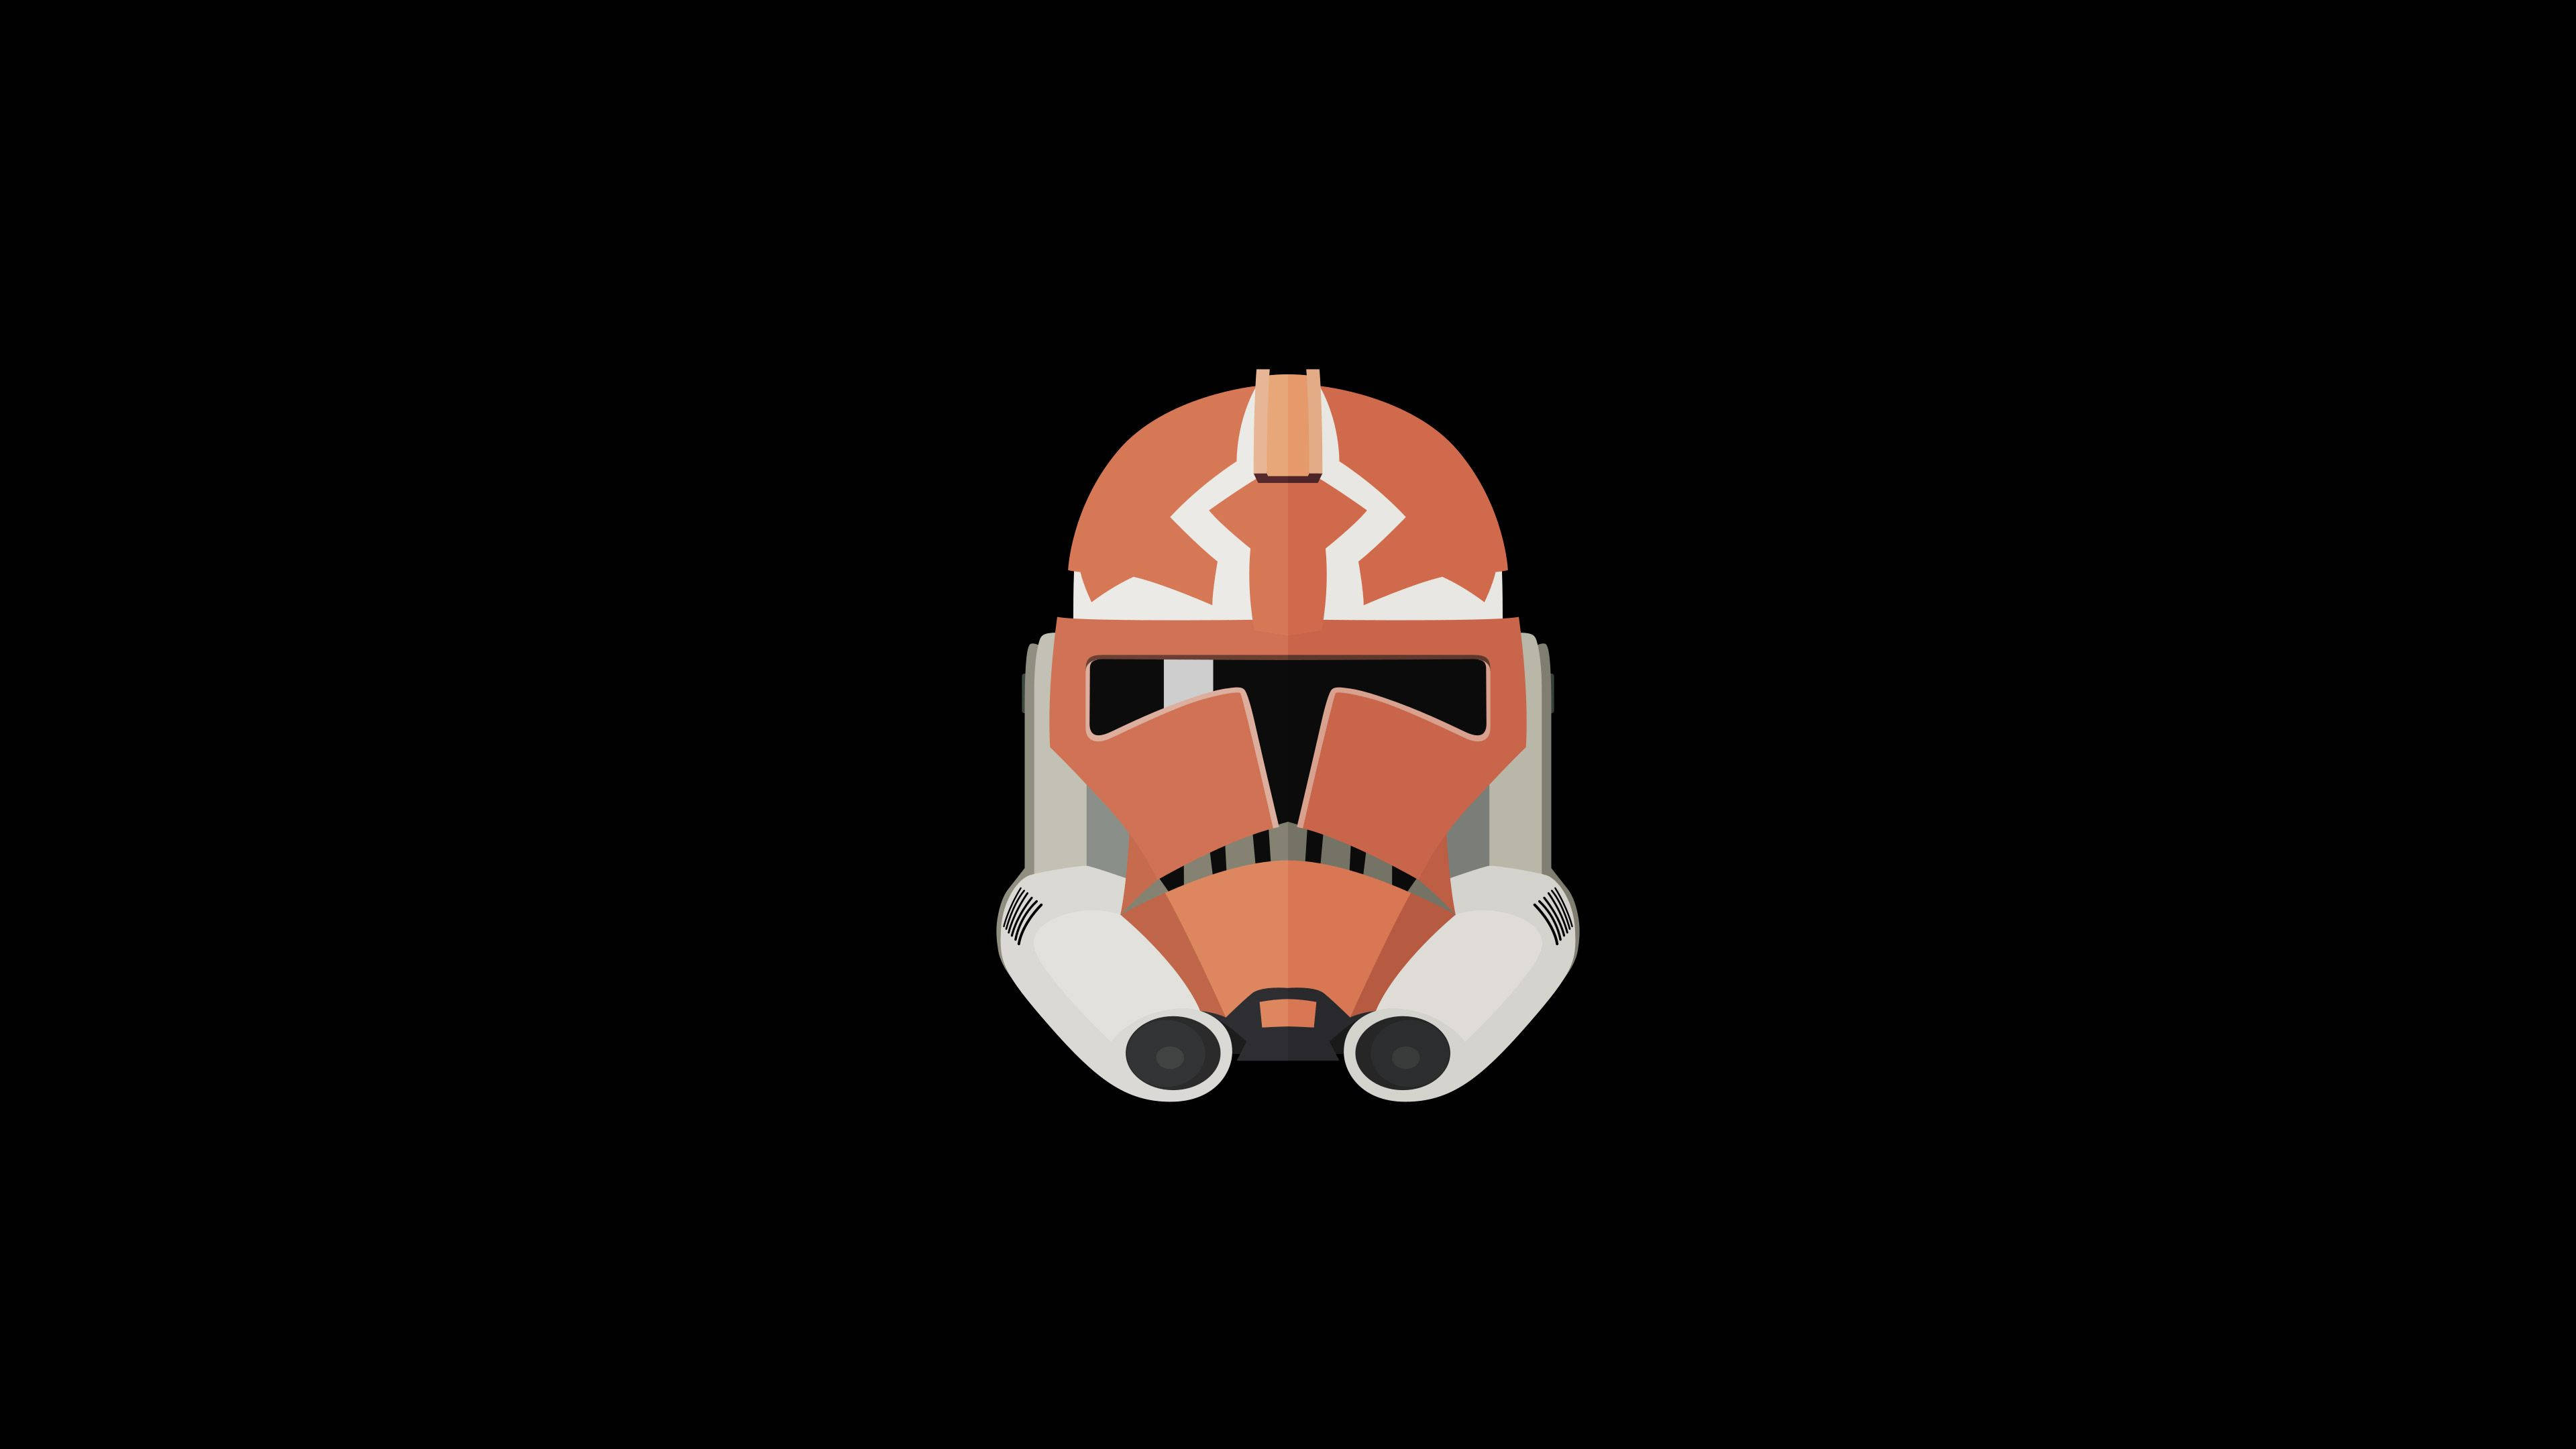 Minimalist Star Wars Orange Mask Wallpaper